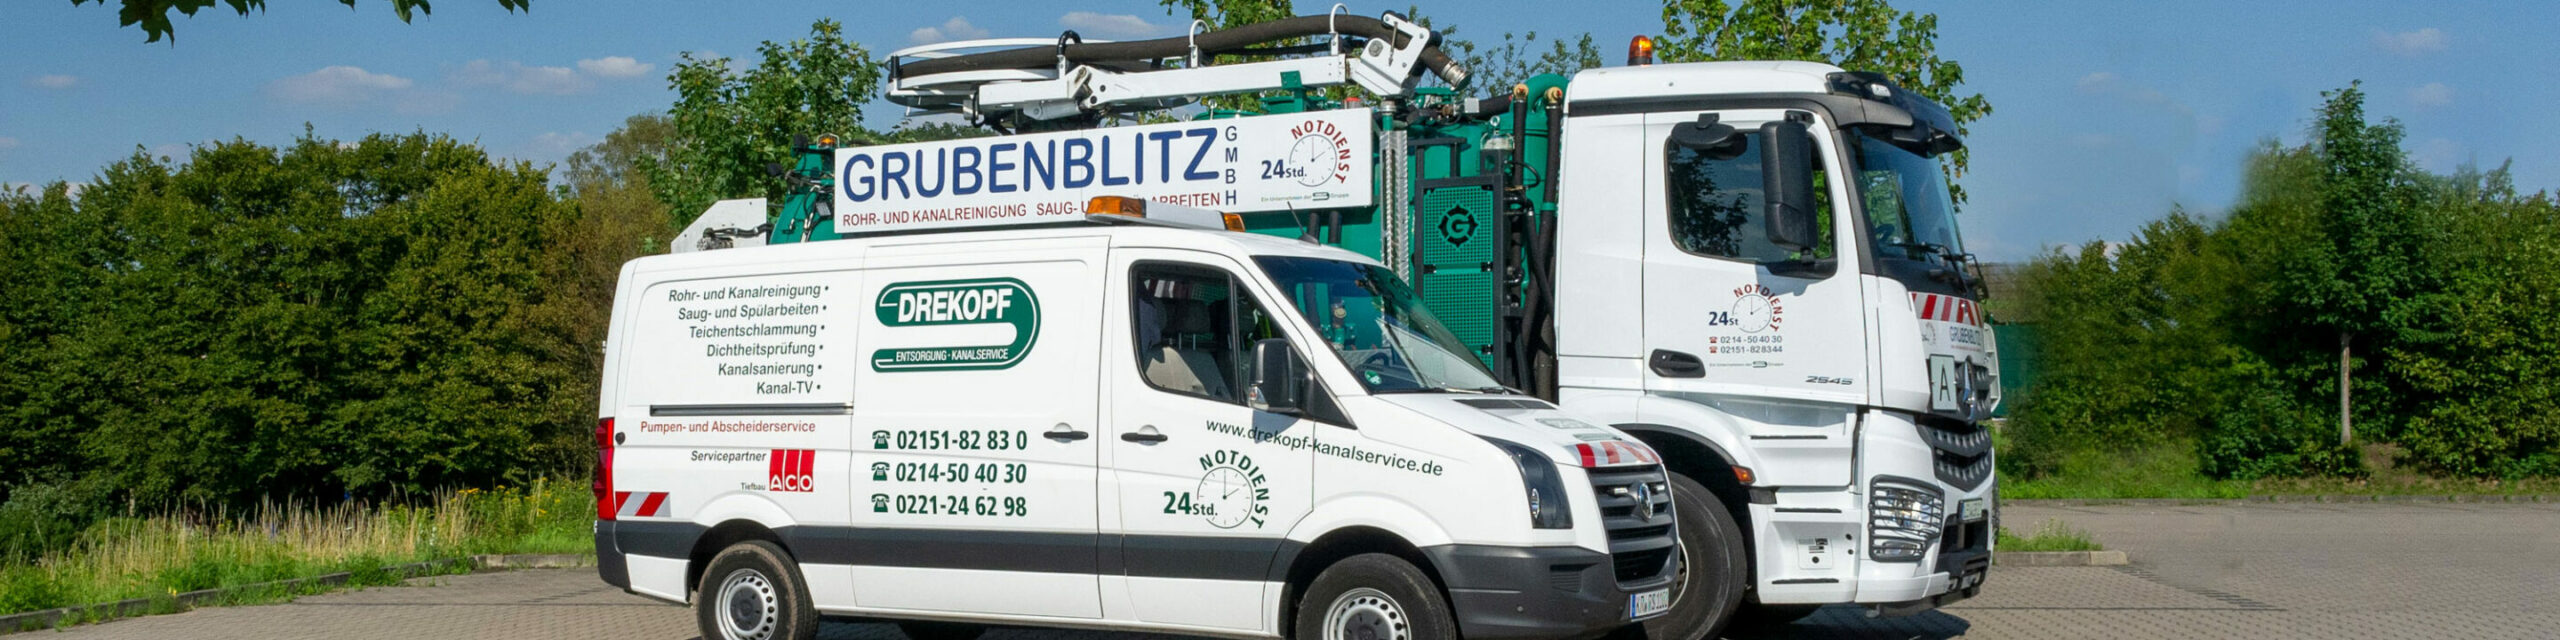 Servicefahrzeuge der Firma Grubenblitz und Drekopf